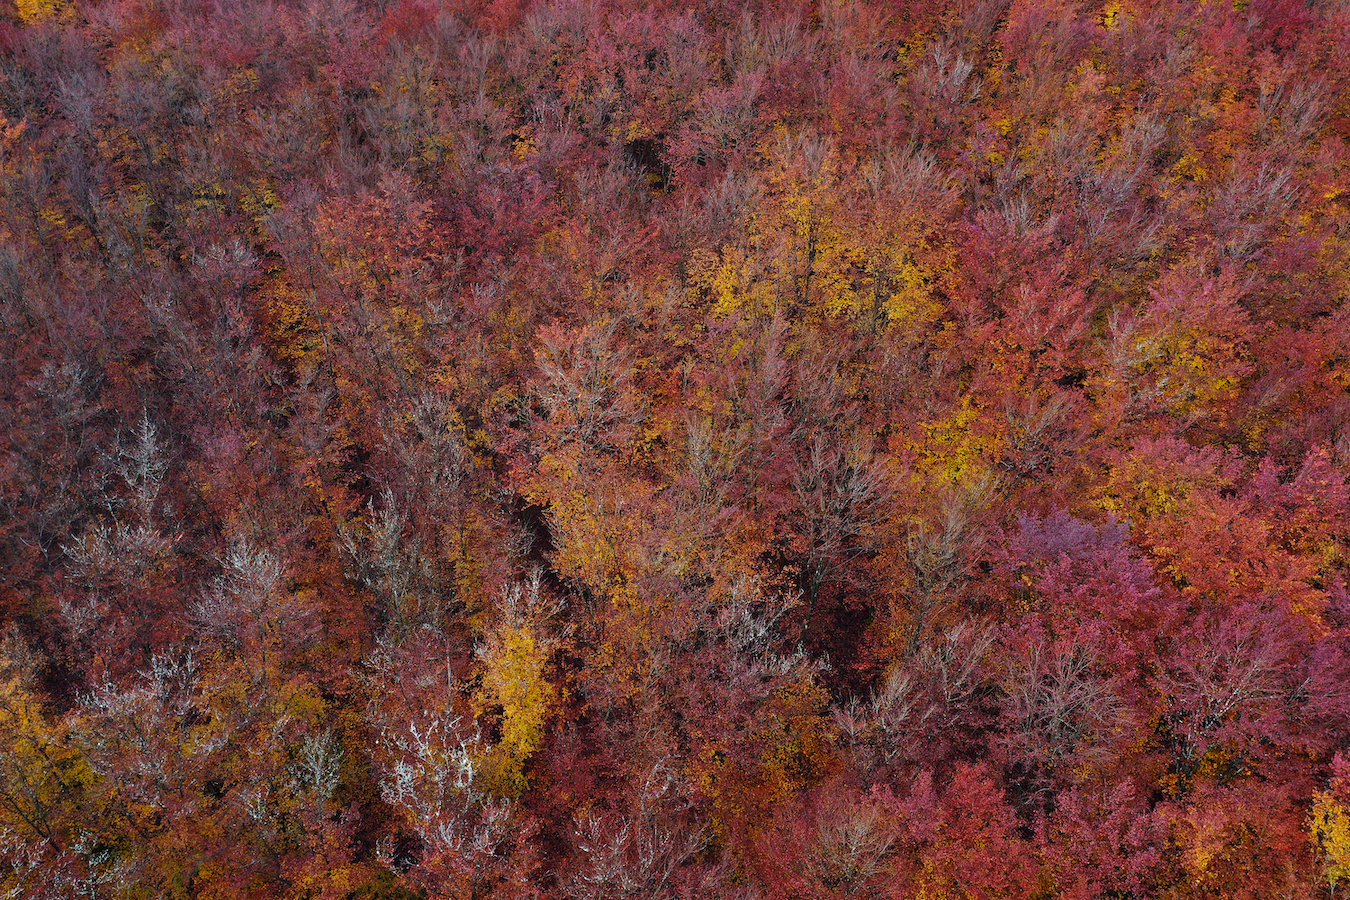 Une vue aérienne d'une forêt aux couleurs rougeoyantes d'automne